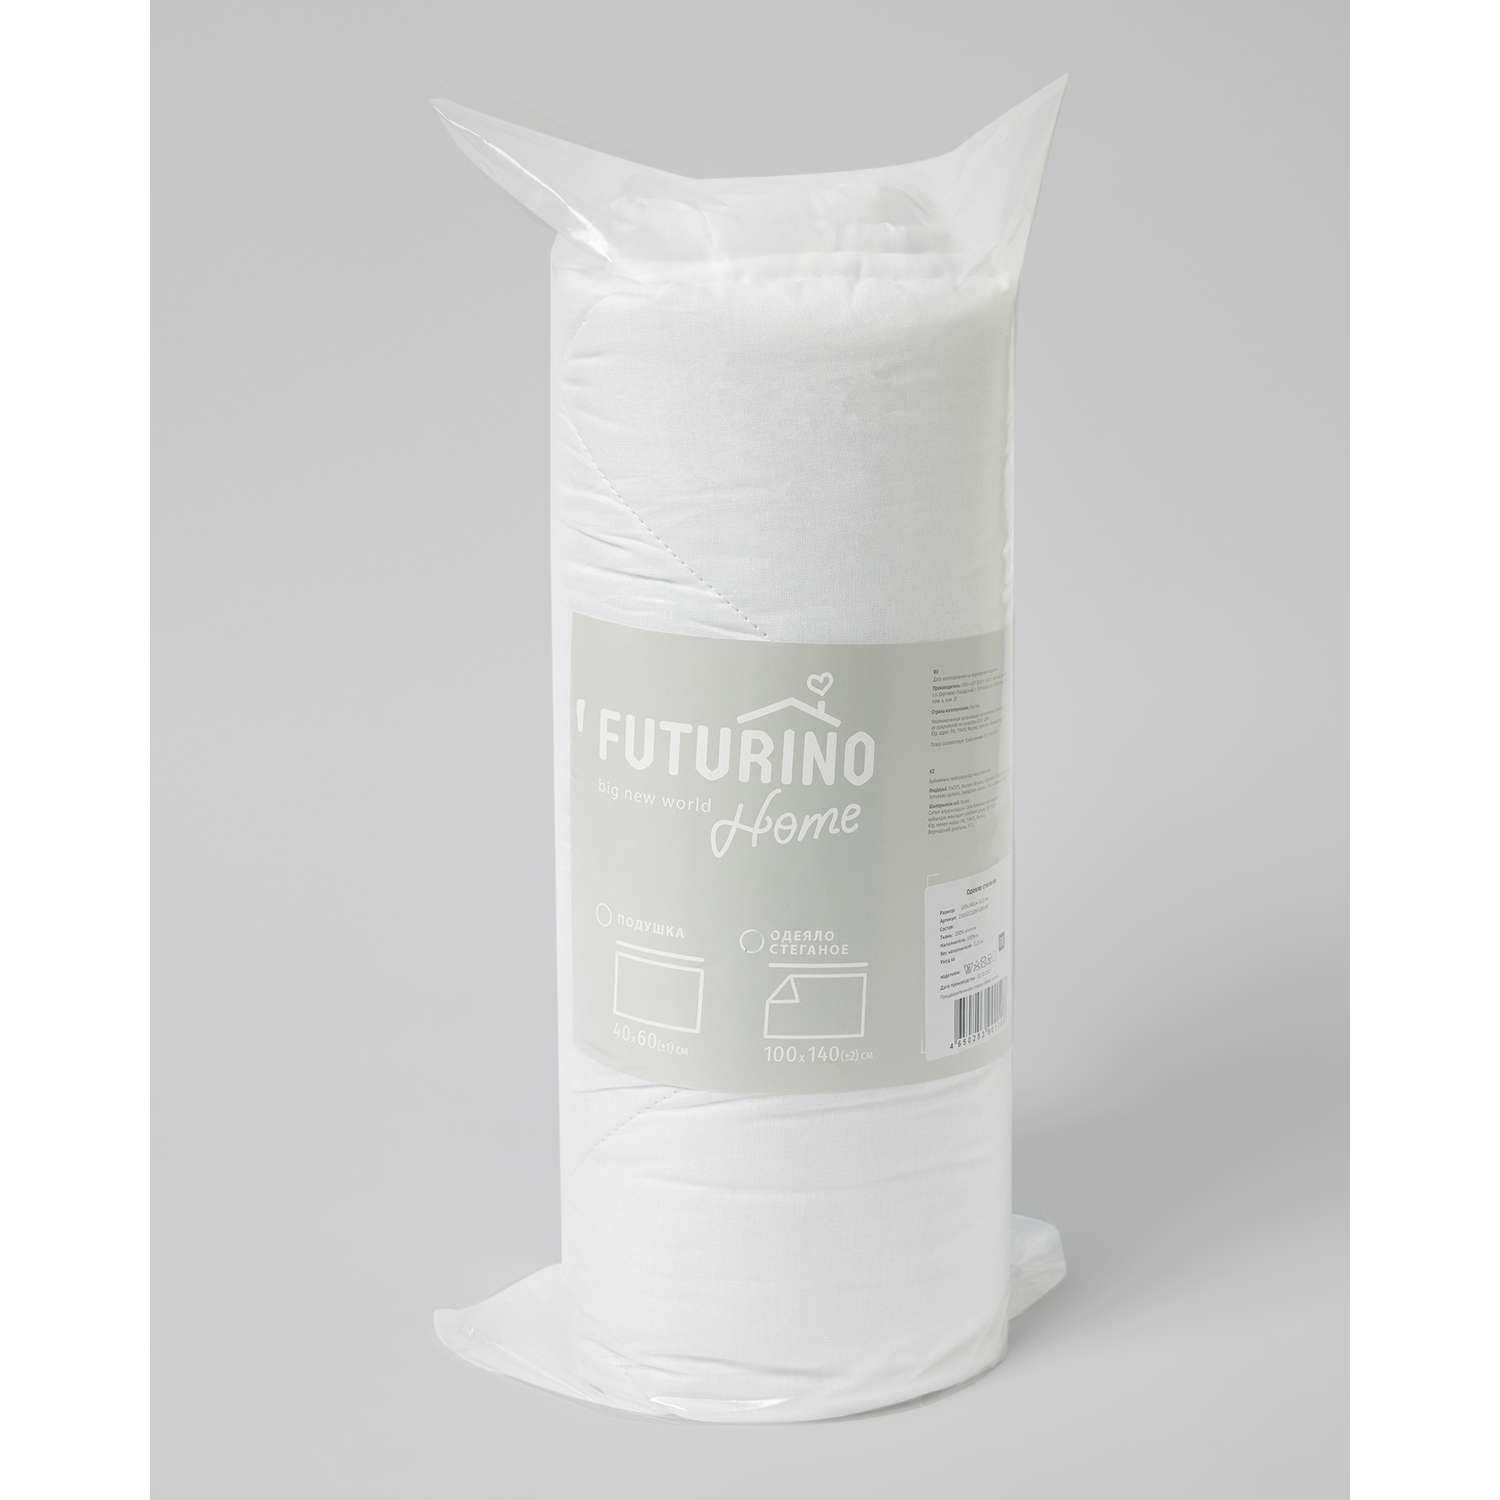 Одеяло стеганое Futurino Home 100*140см - фото 2